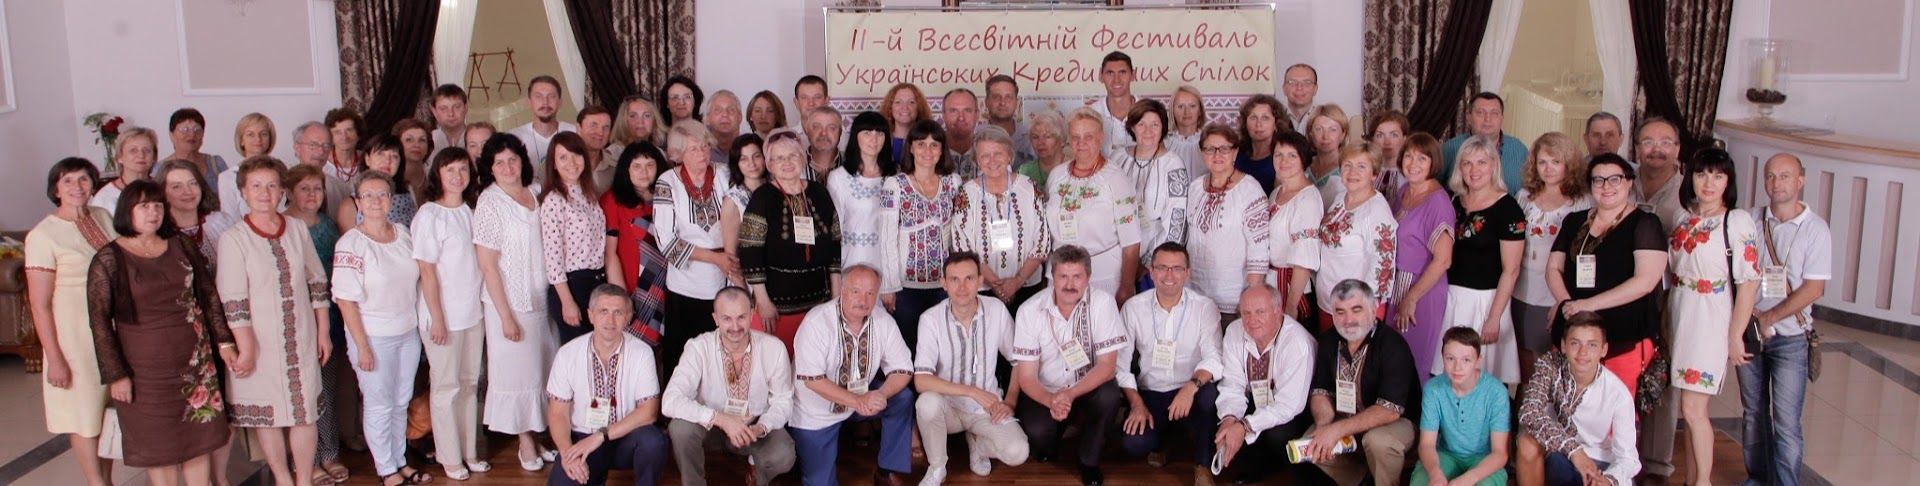 Учасники ІІ Всесвітнього фестивалю Українських Кредитних Спілок - фото 104817